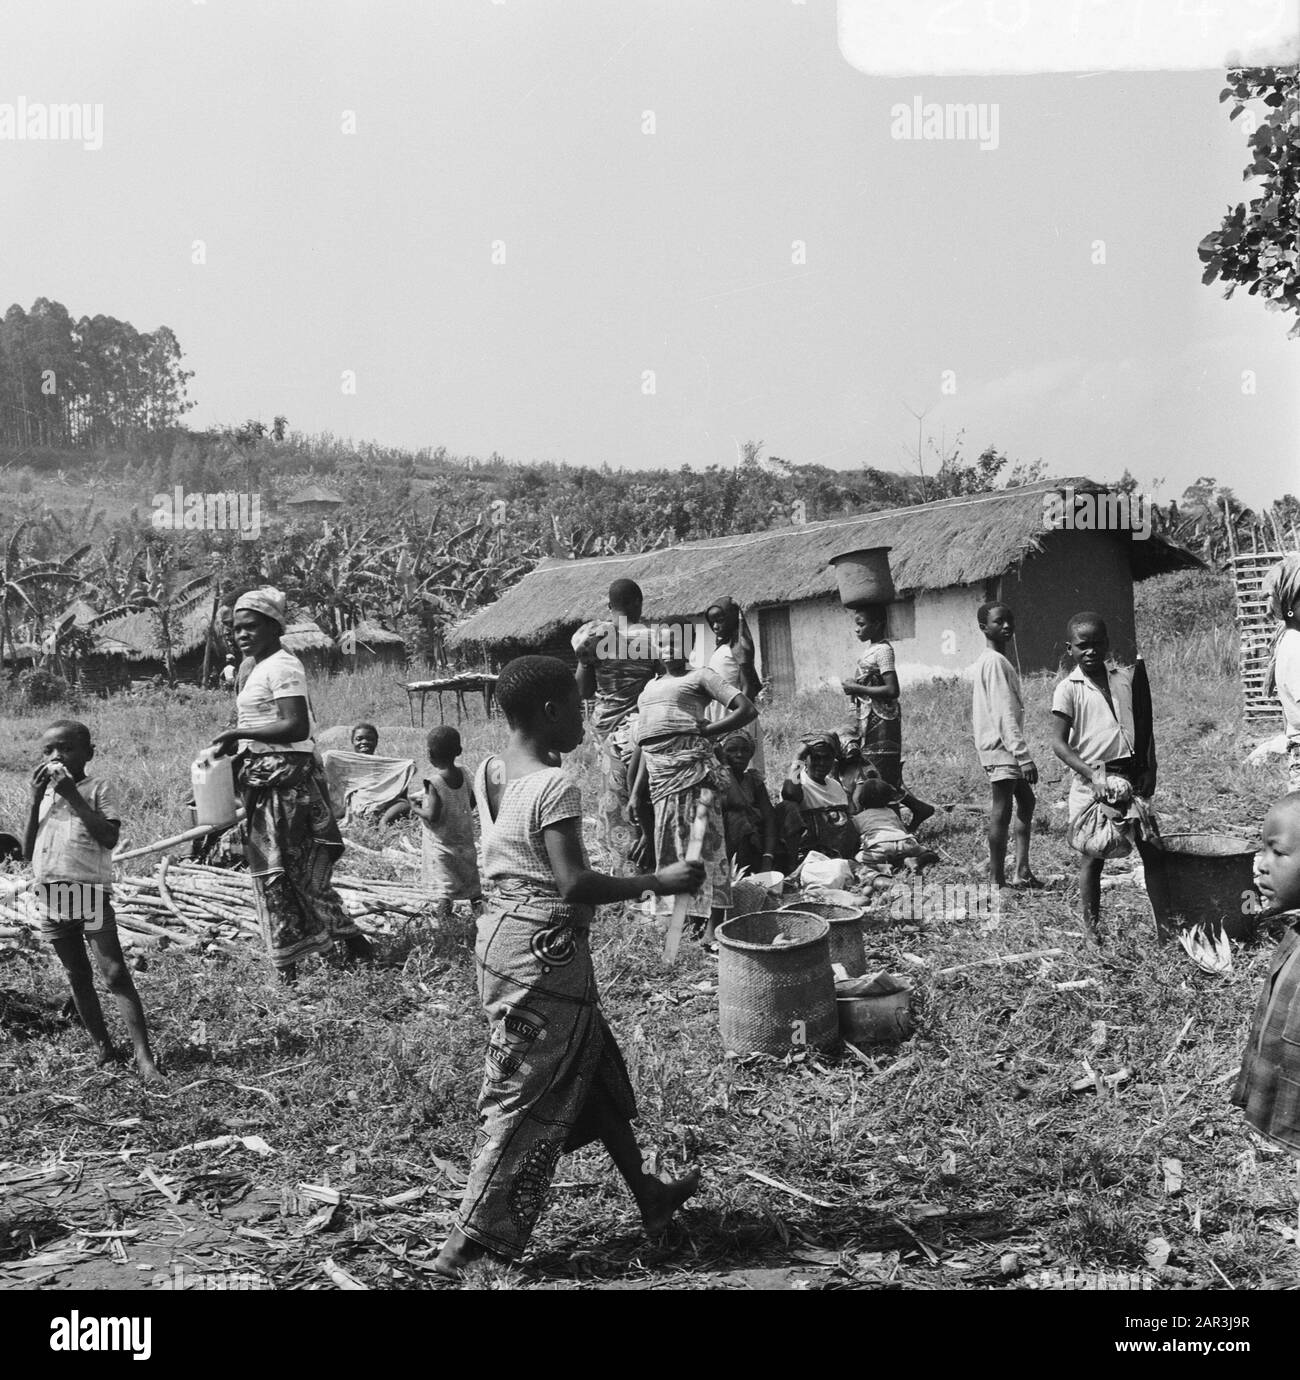 Zaire (früher Belgischer Kongo) landwirtschaftliche Arbeit auf einem Gebiet Datum: 24. Oktober 1973 Standort: Kongo, Zaire Schlüsselwörter: Felder, Landwirtschaft Stockfoto